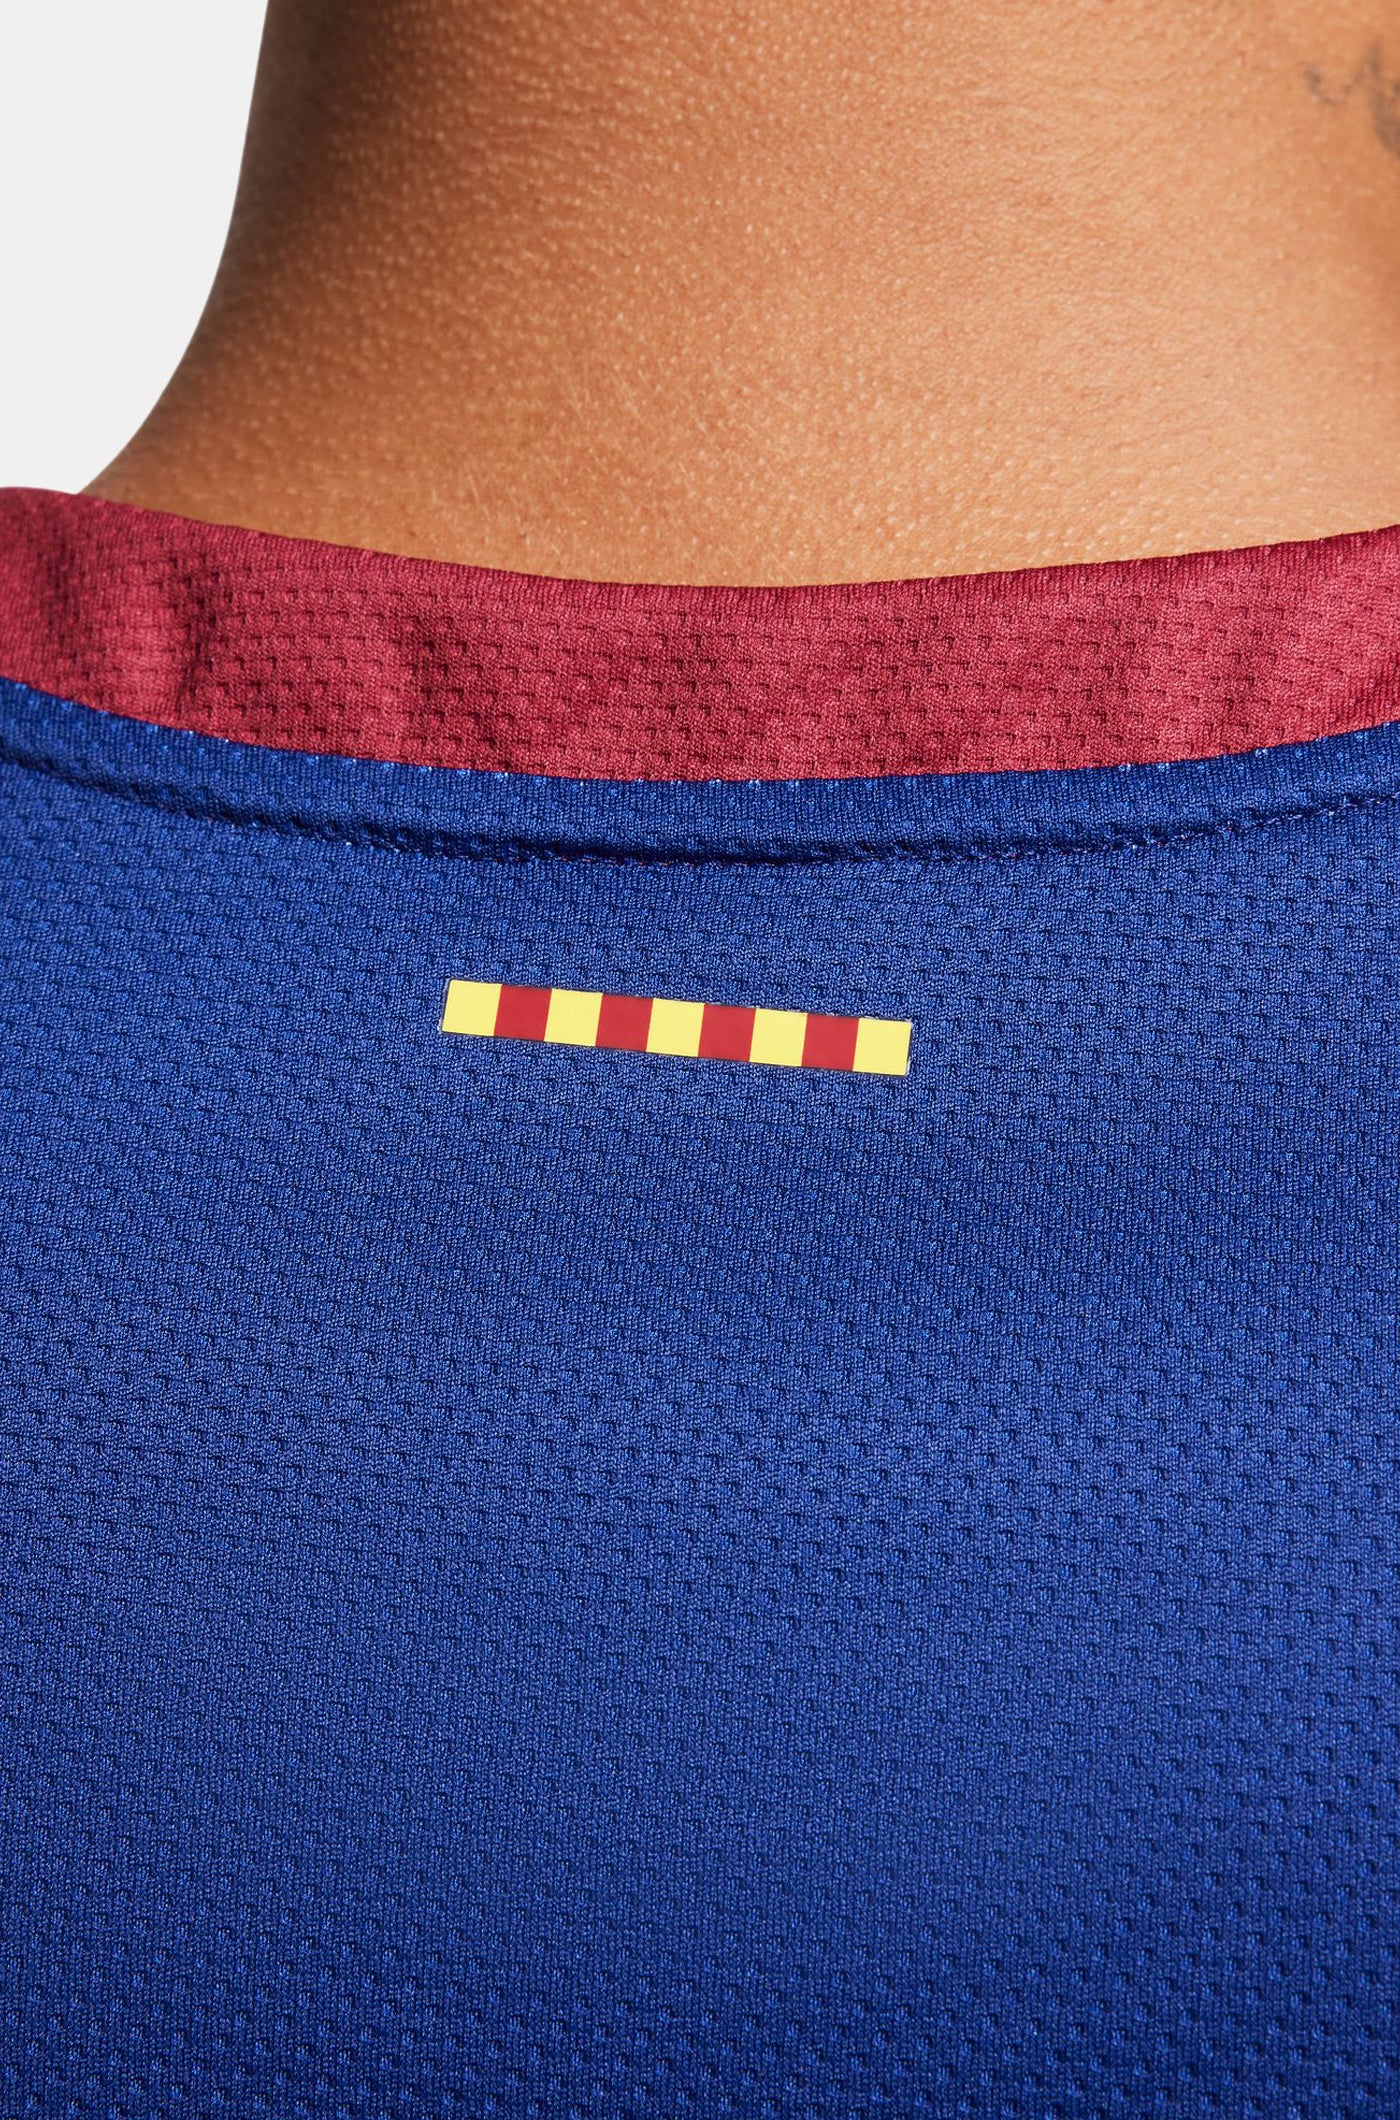 Euroleague FC Barcelona home basketball shirt 23/24 - LAPROVITTOLA